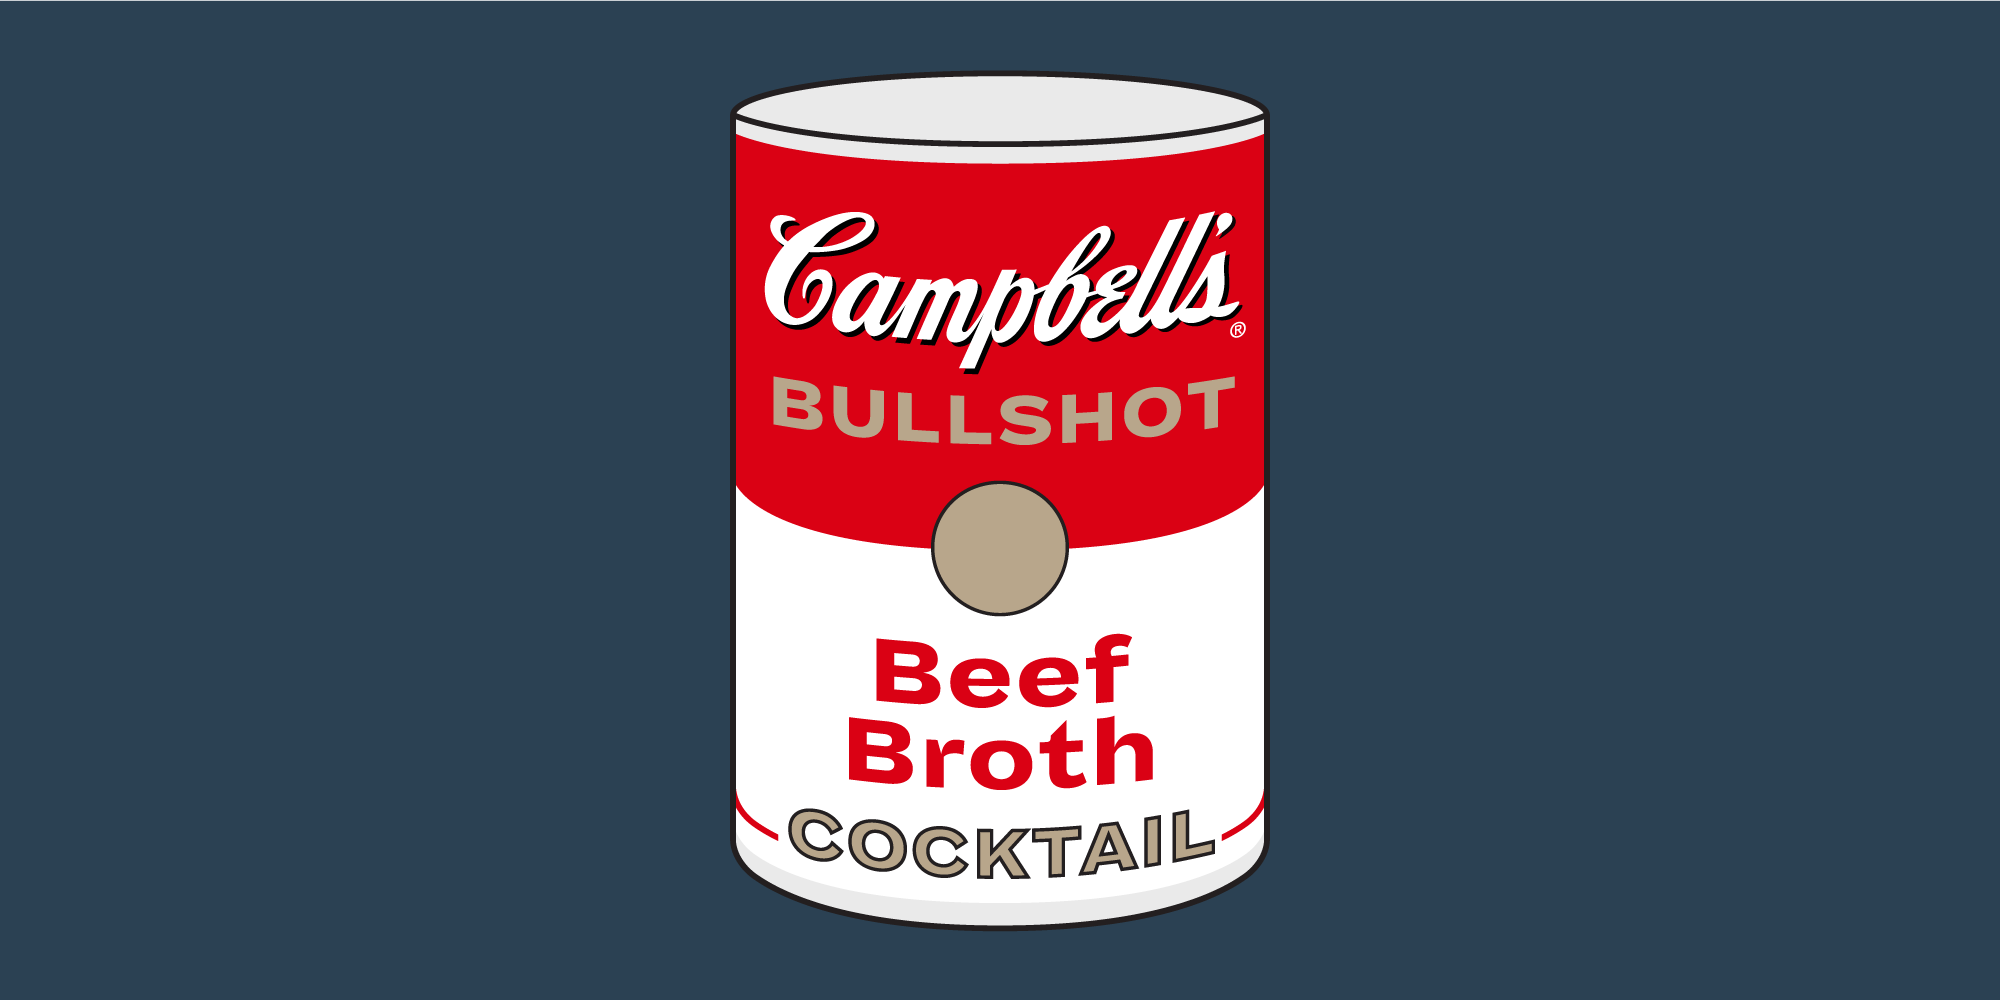 Best Bullshot Cocktail Recipe - What Is a Bullshot?